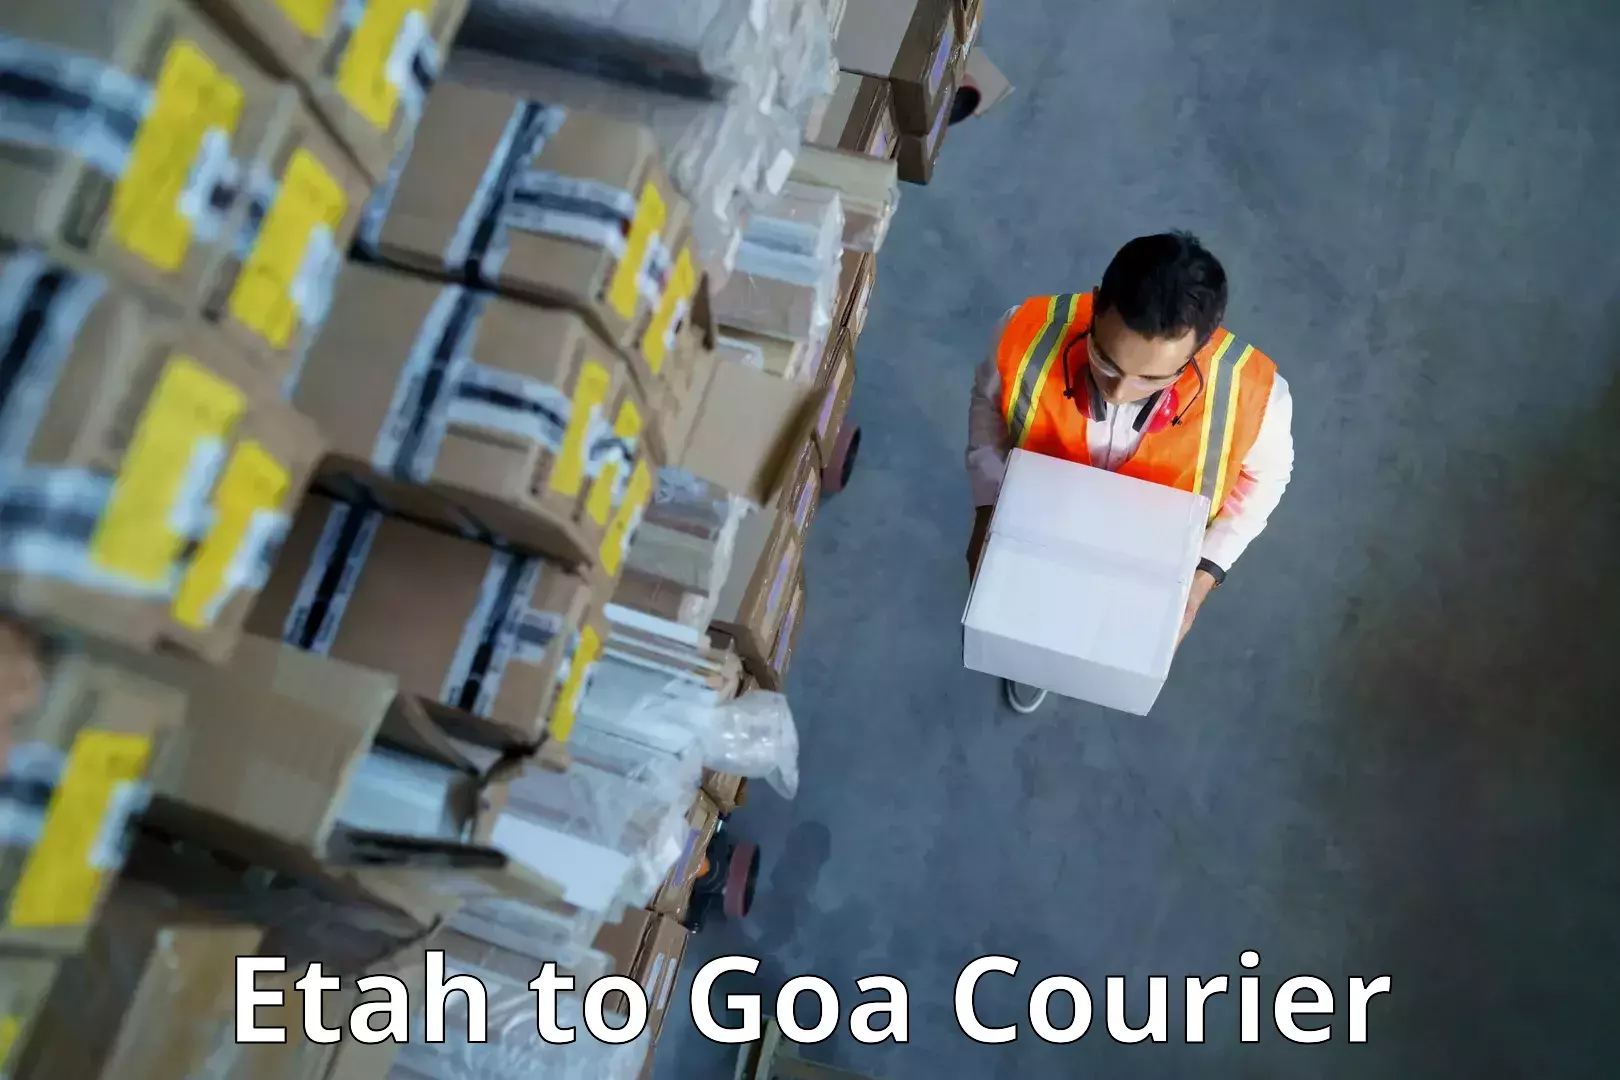 Courier dispatch services Etah to Goa University